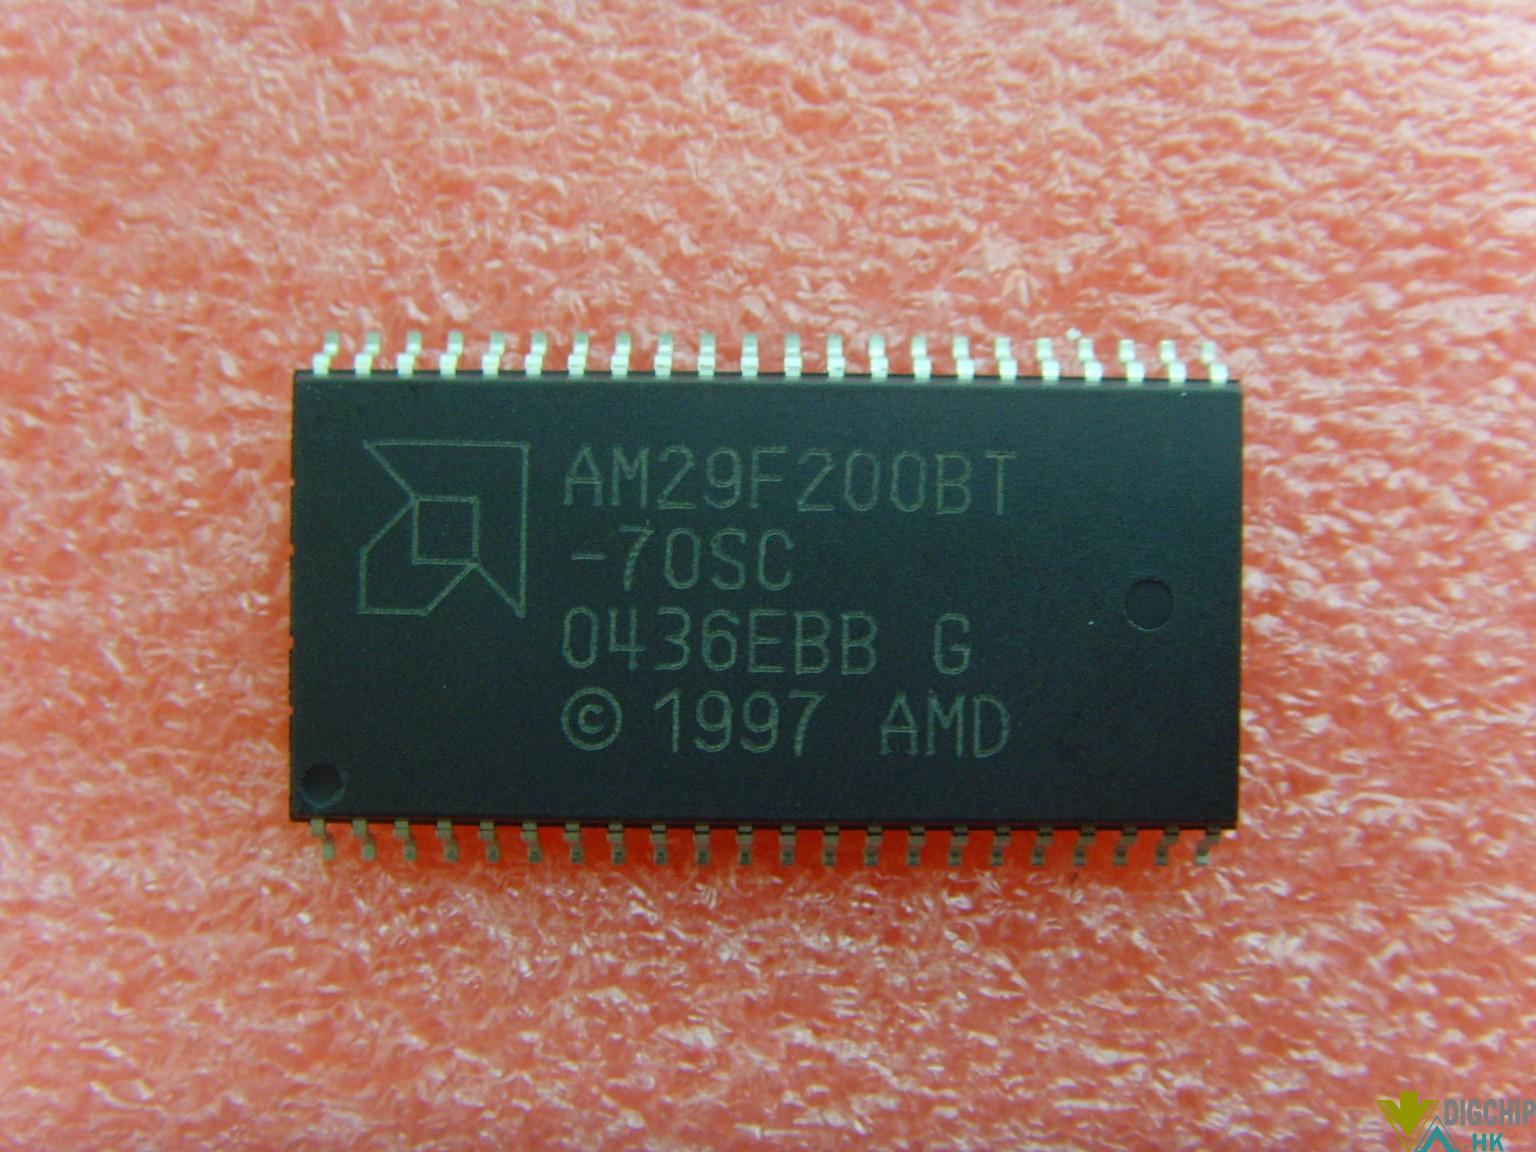 AM29F200BT-70SC